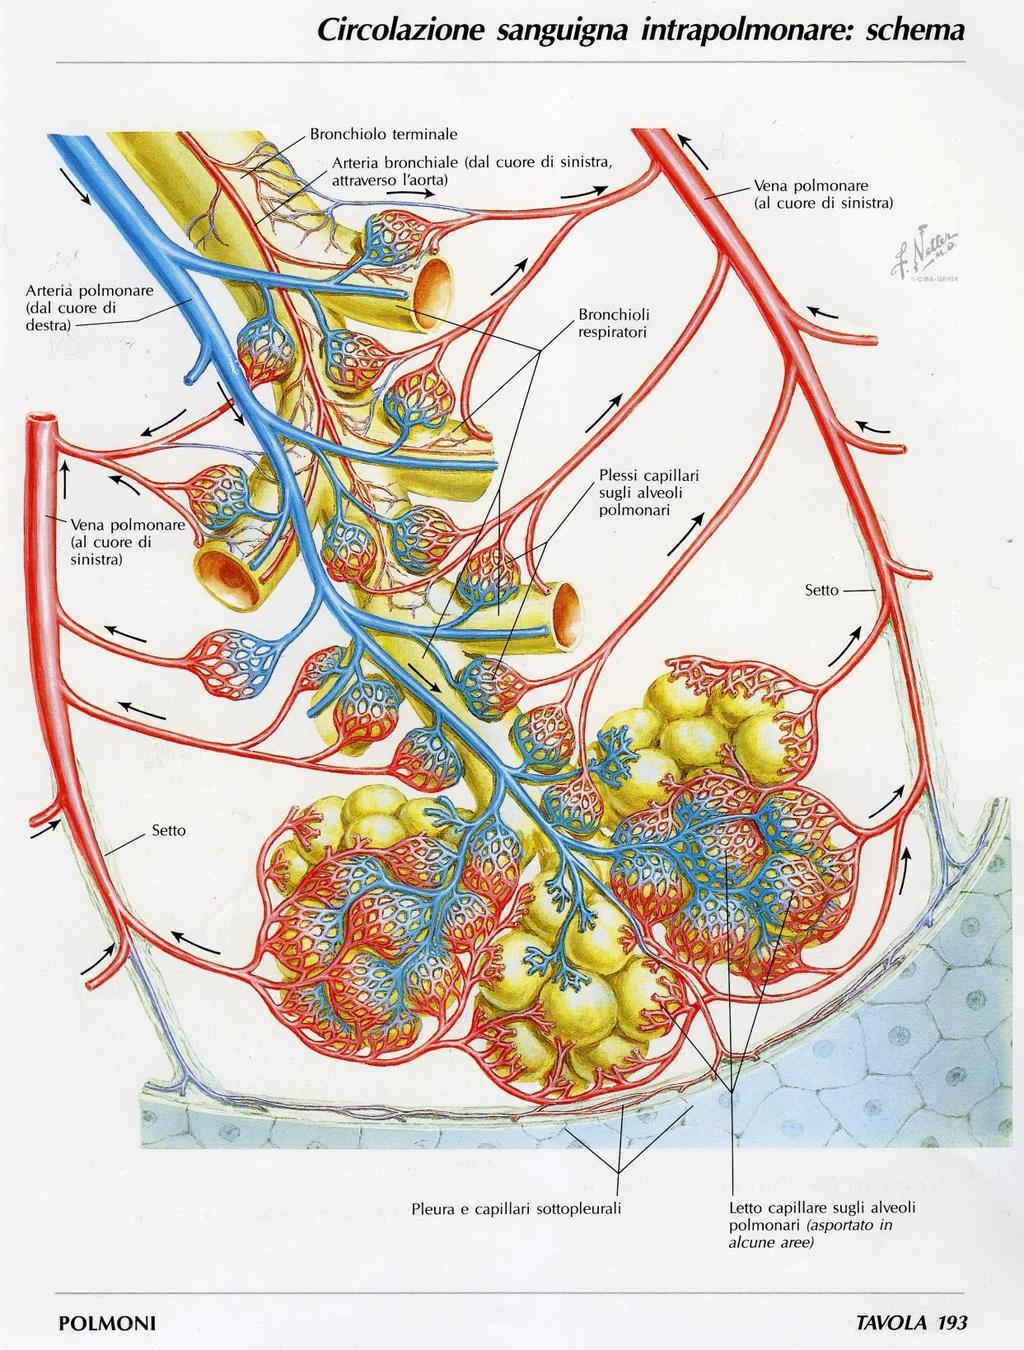 Circolo Polmonare Funzionale (vasi polmonari) Tronco polmonare dal ventricolo destro del cuore, ARTERIE polmonari dx e sx con sangue venoso Arterie polmonari seguono le ramificazioni dei bronchi fino